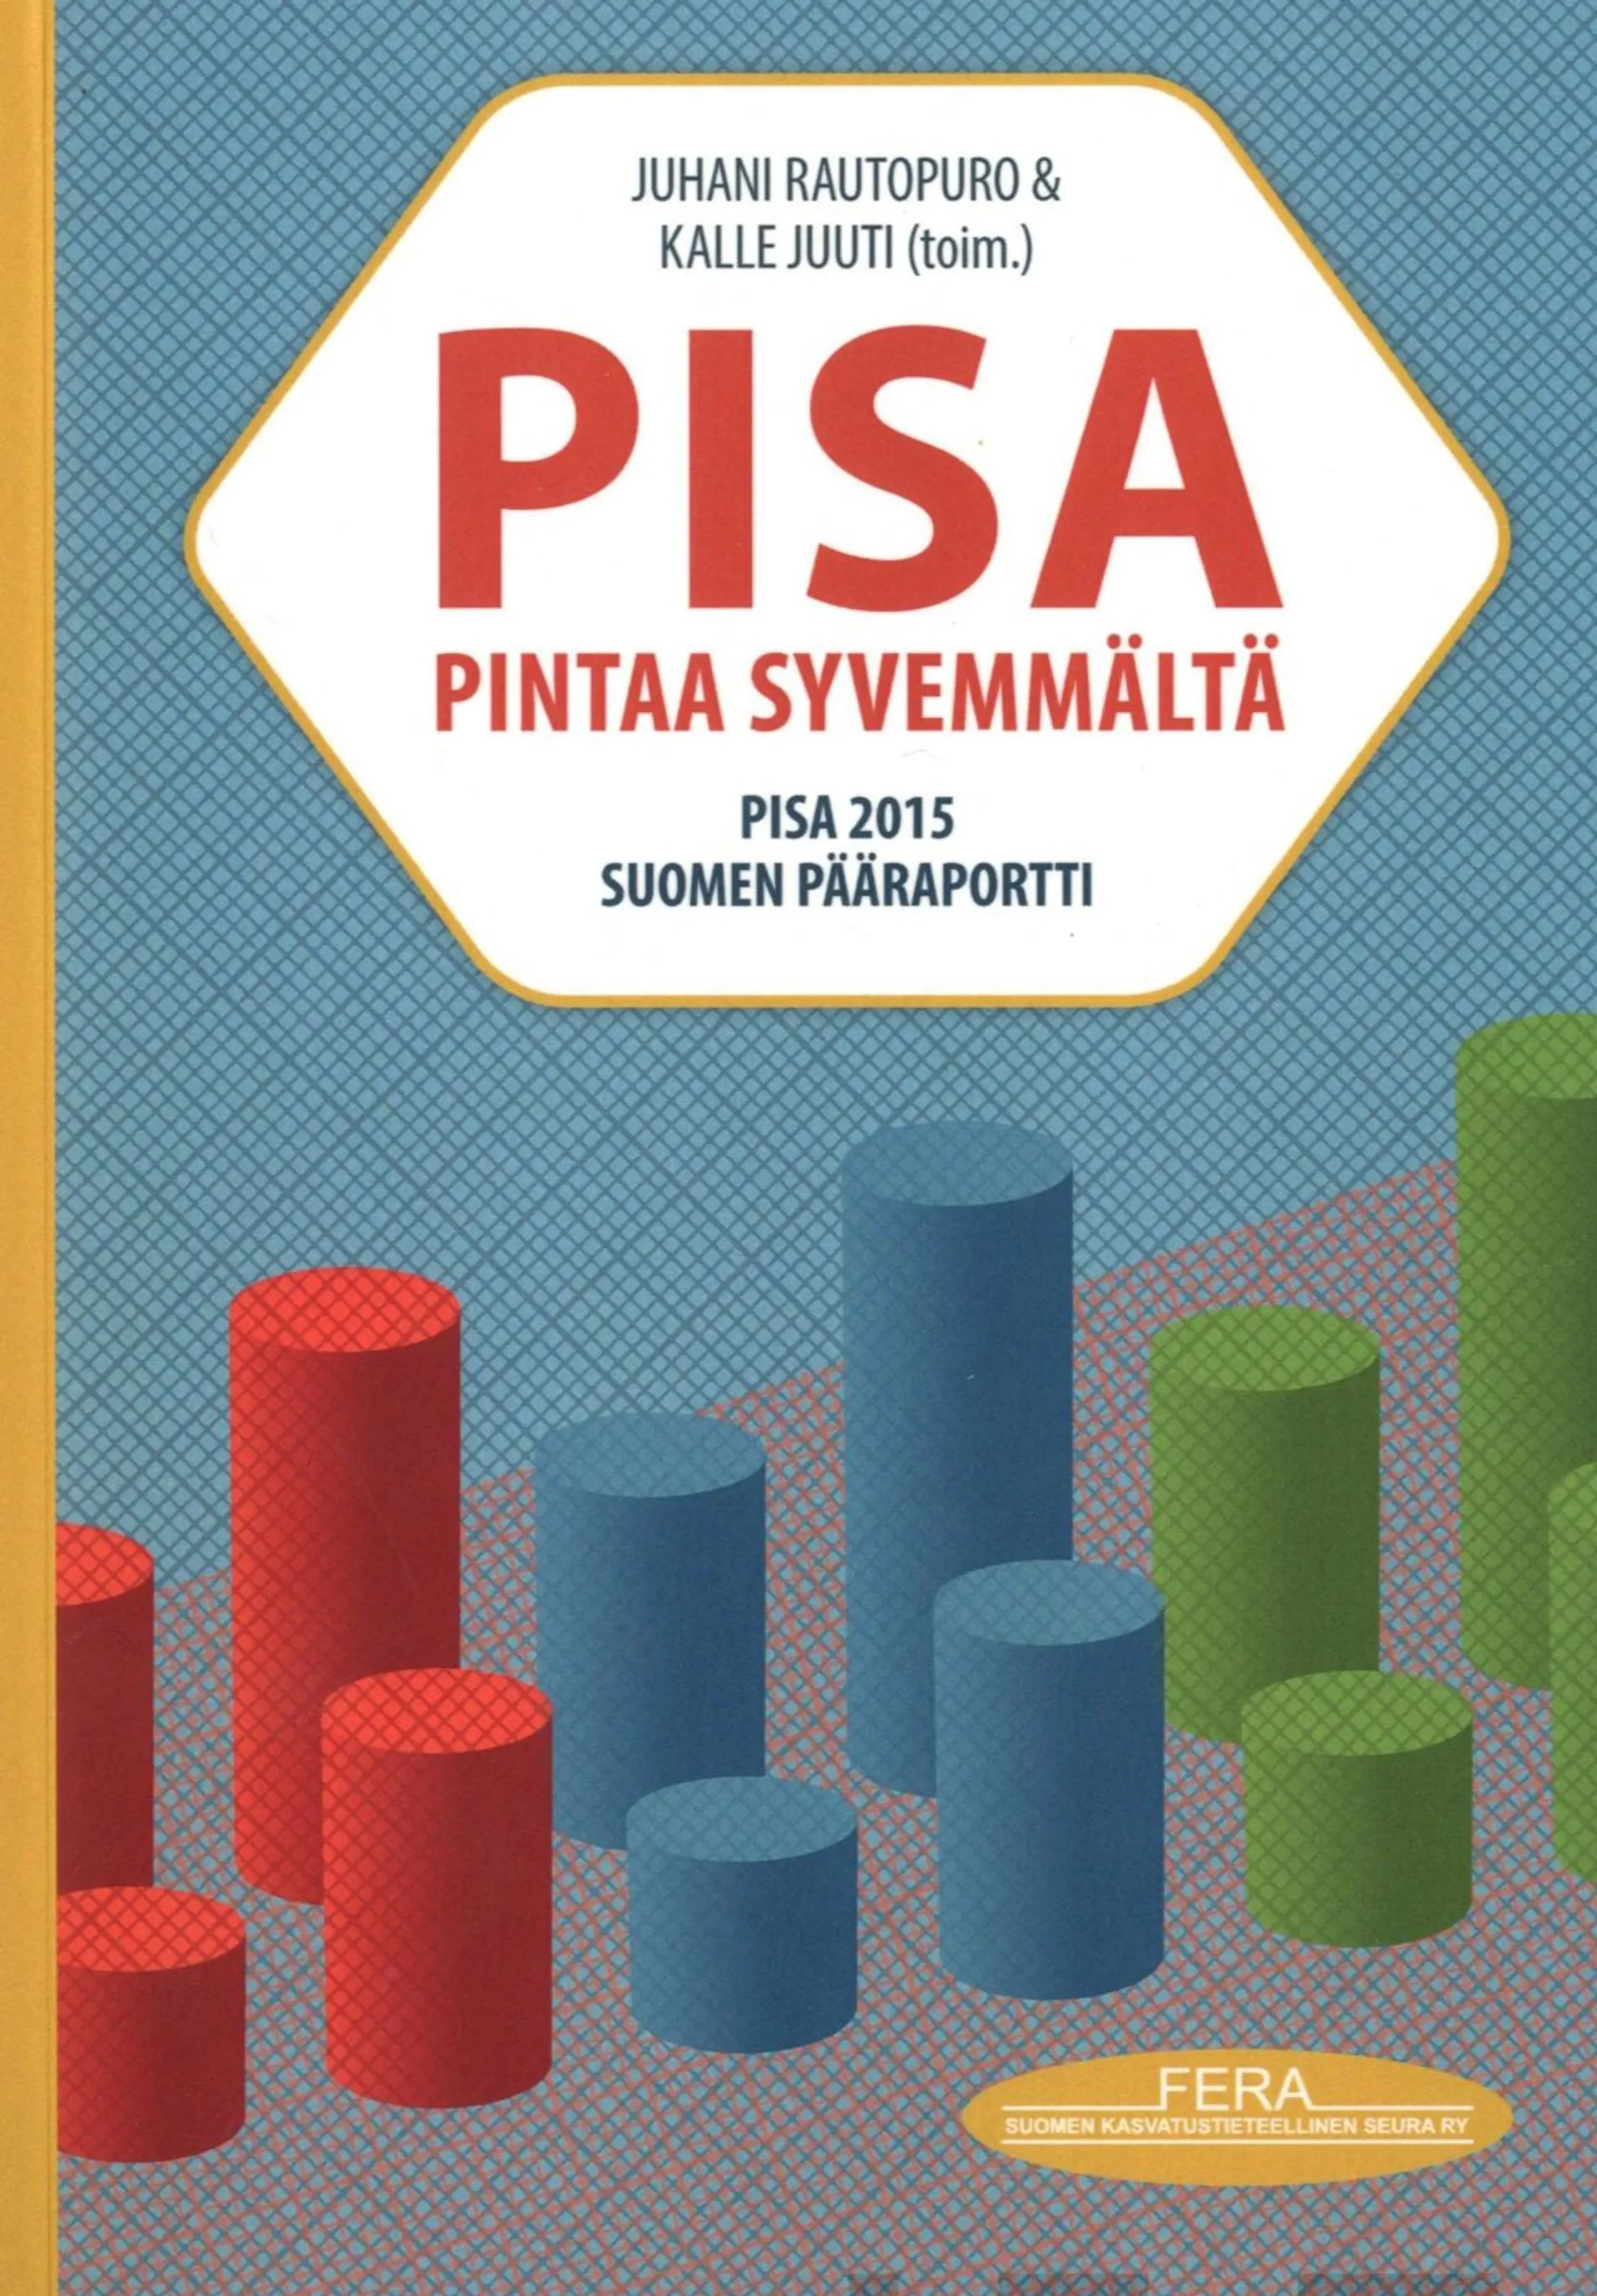 PISA pintaa syvemmältä - PISA 2015 Suomen pääraportti